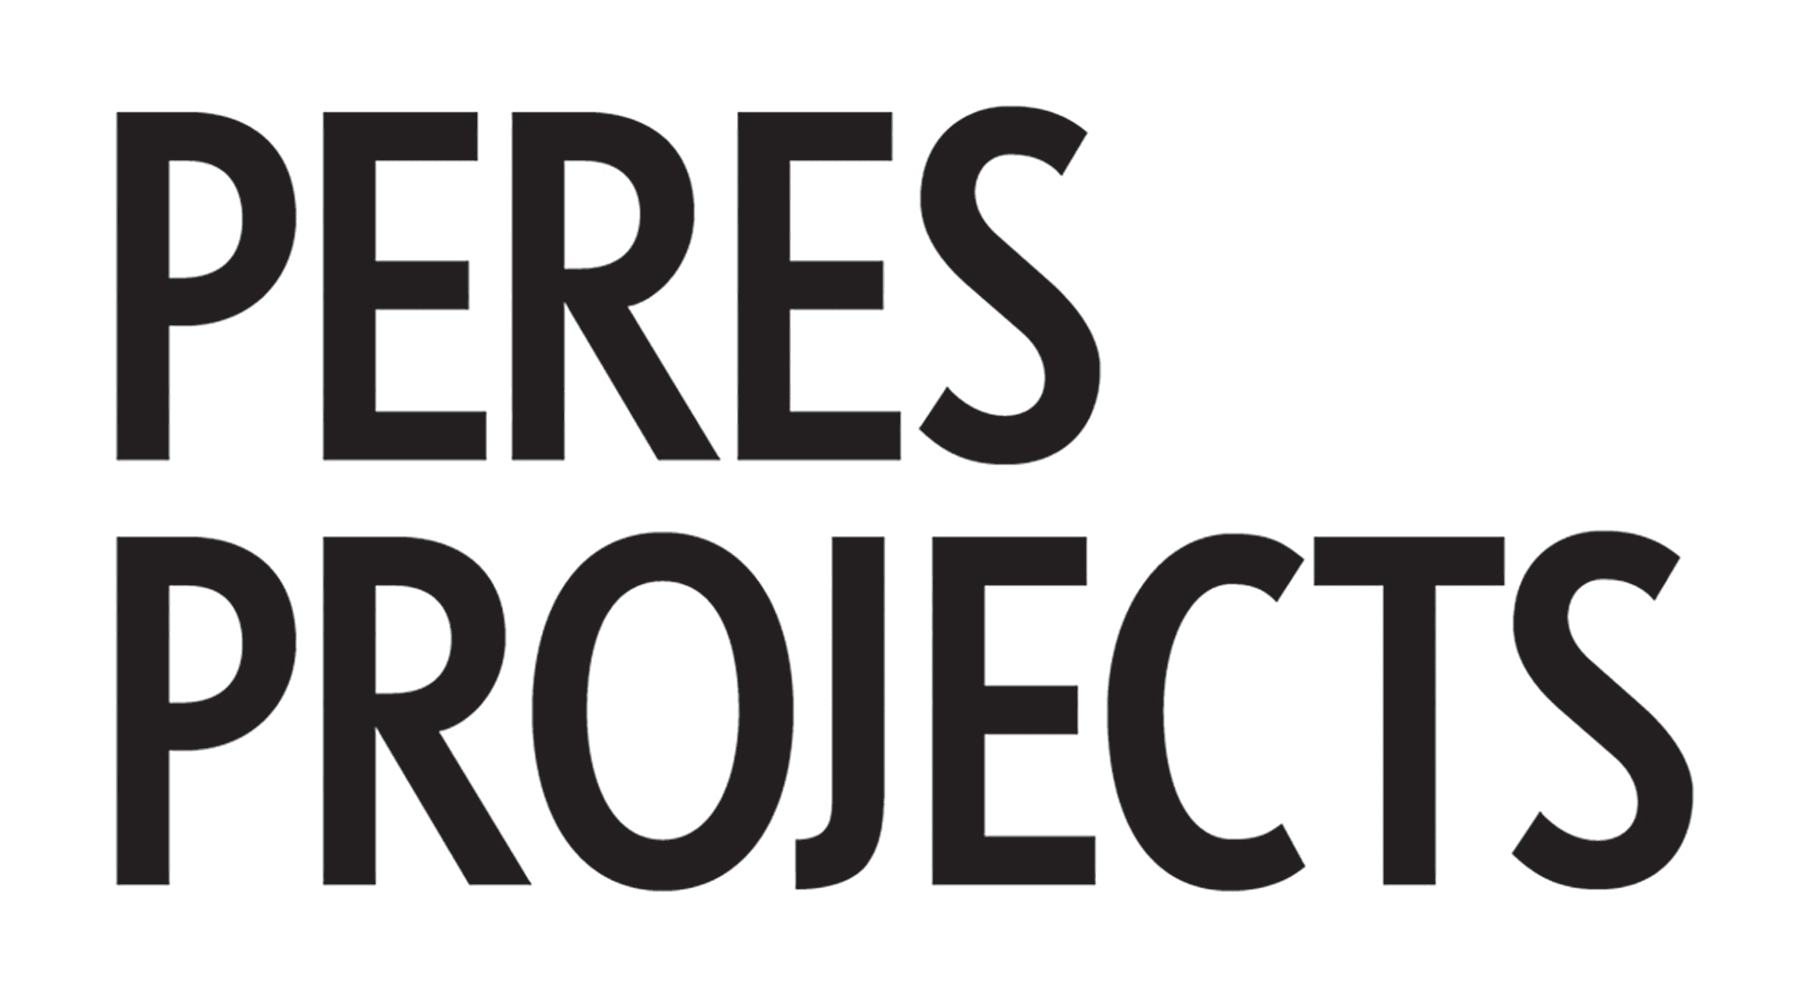 Peres Projects company logo